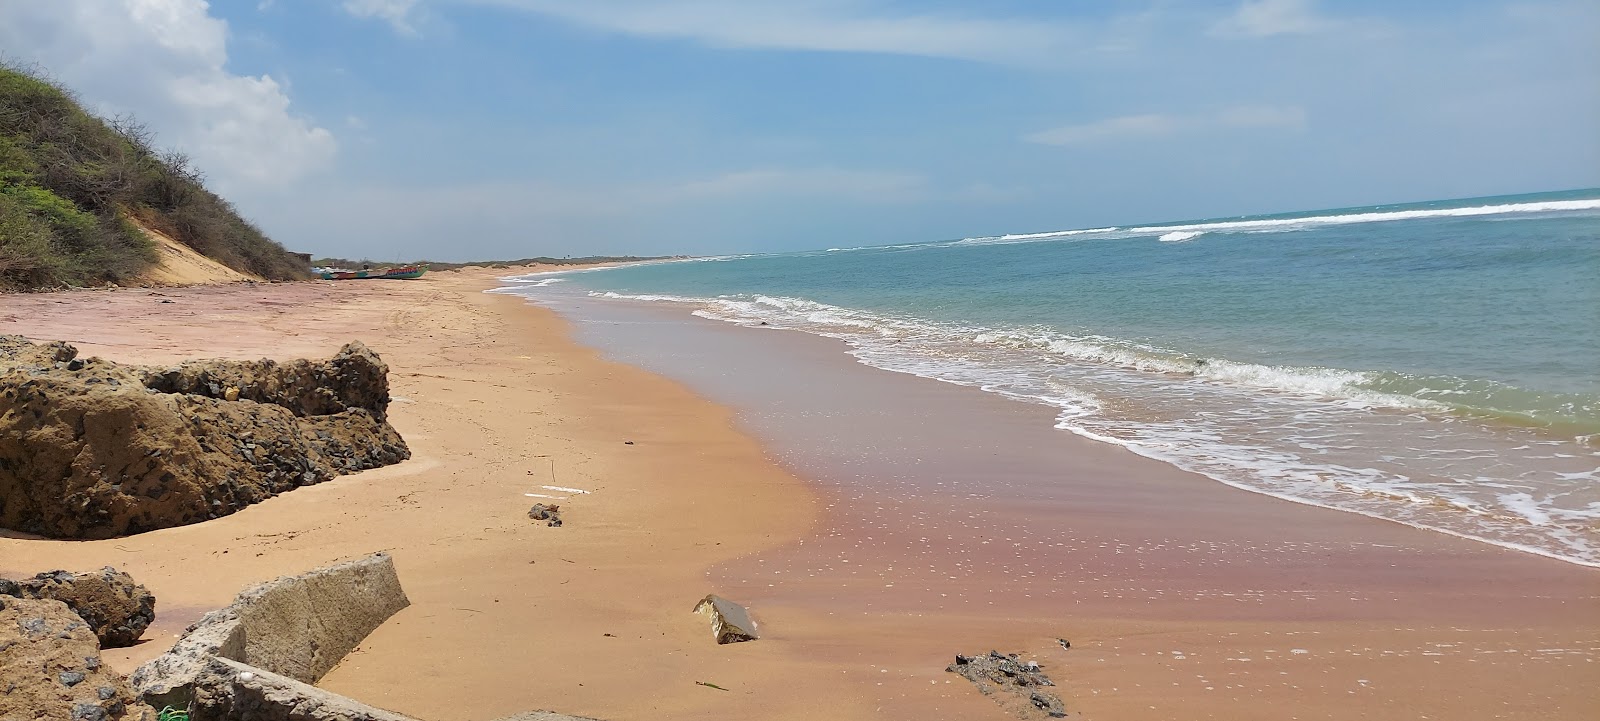 Foto de Kooduthalai beach com praia espaçosa